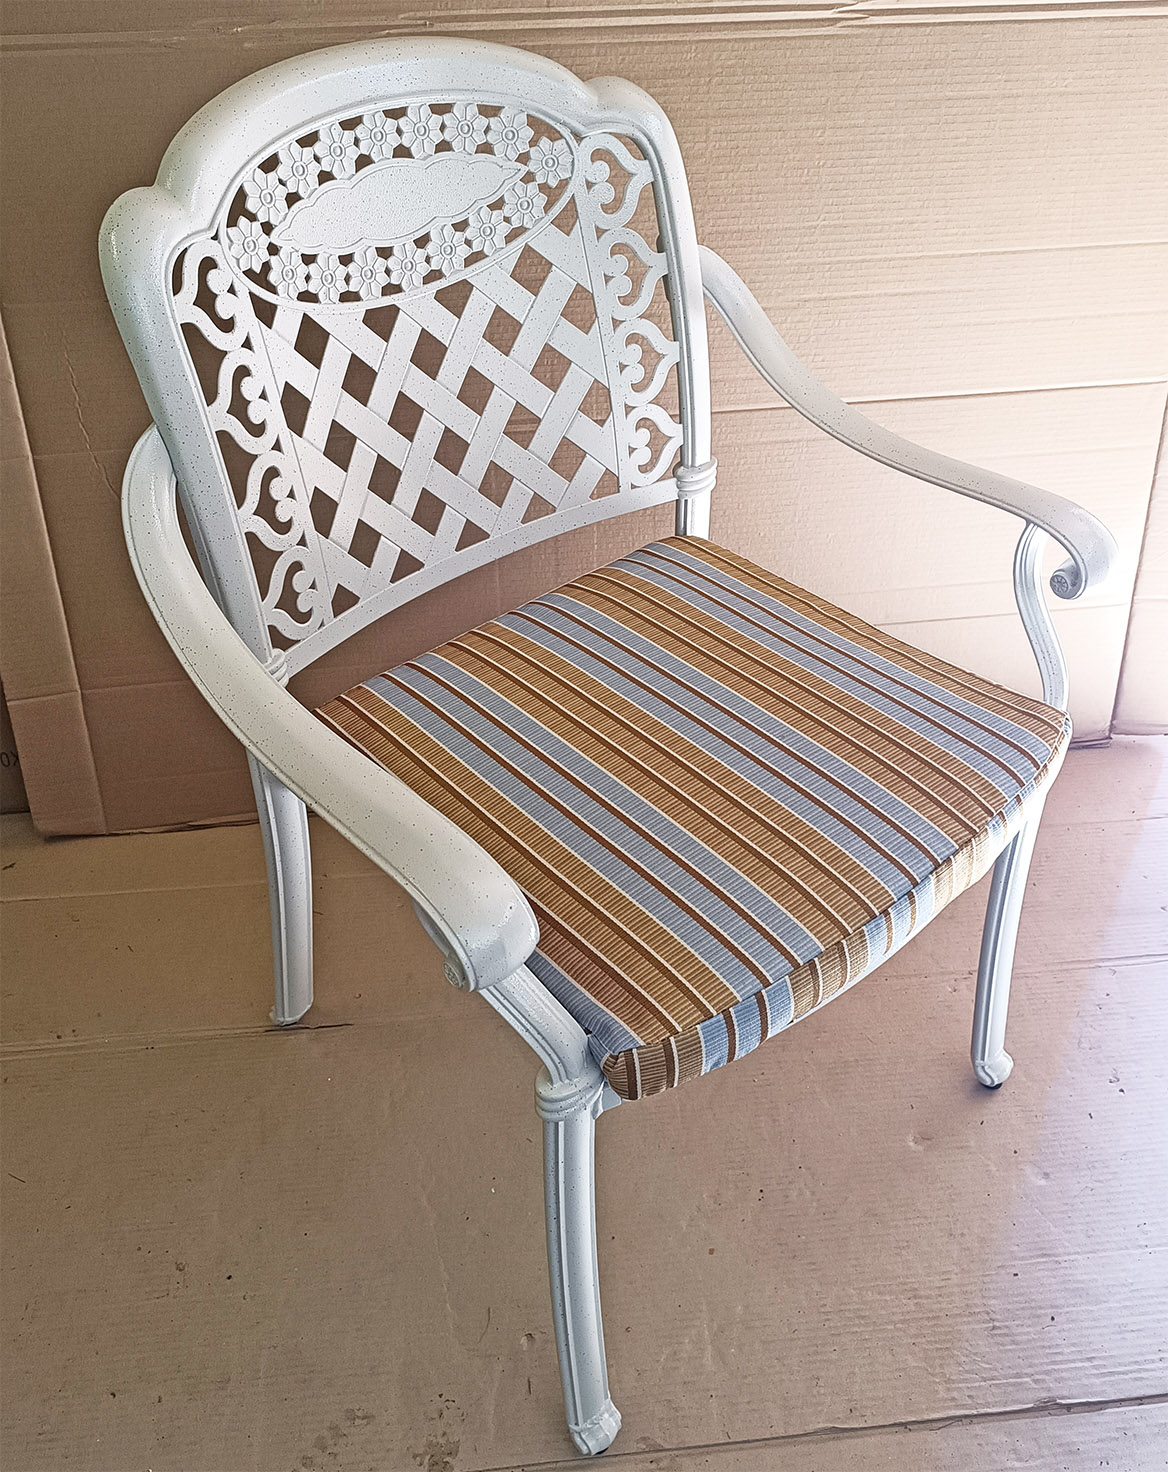 Ажурное кресло из металла для сада и дачи, металлическая белая мебель со склада в москве, уличные кресла для сезонных веранд кафе